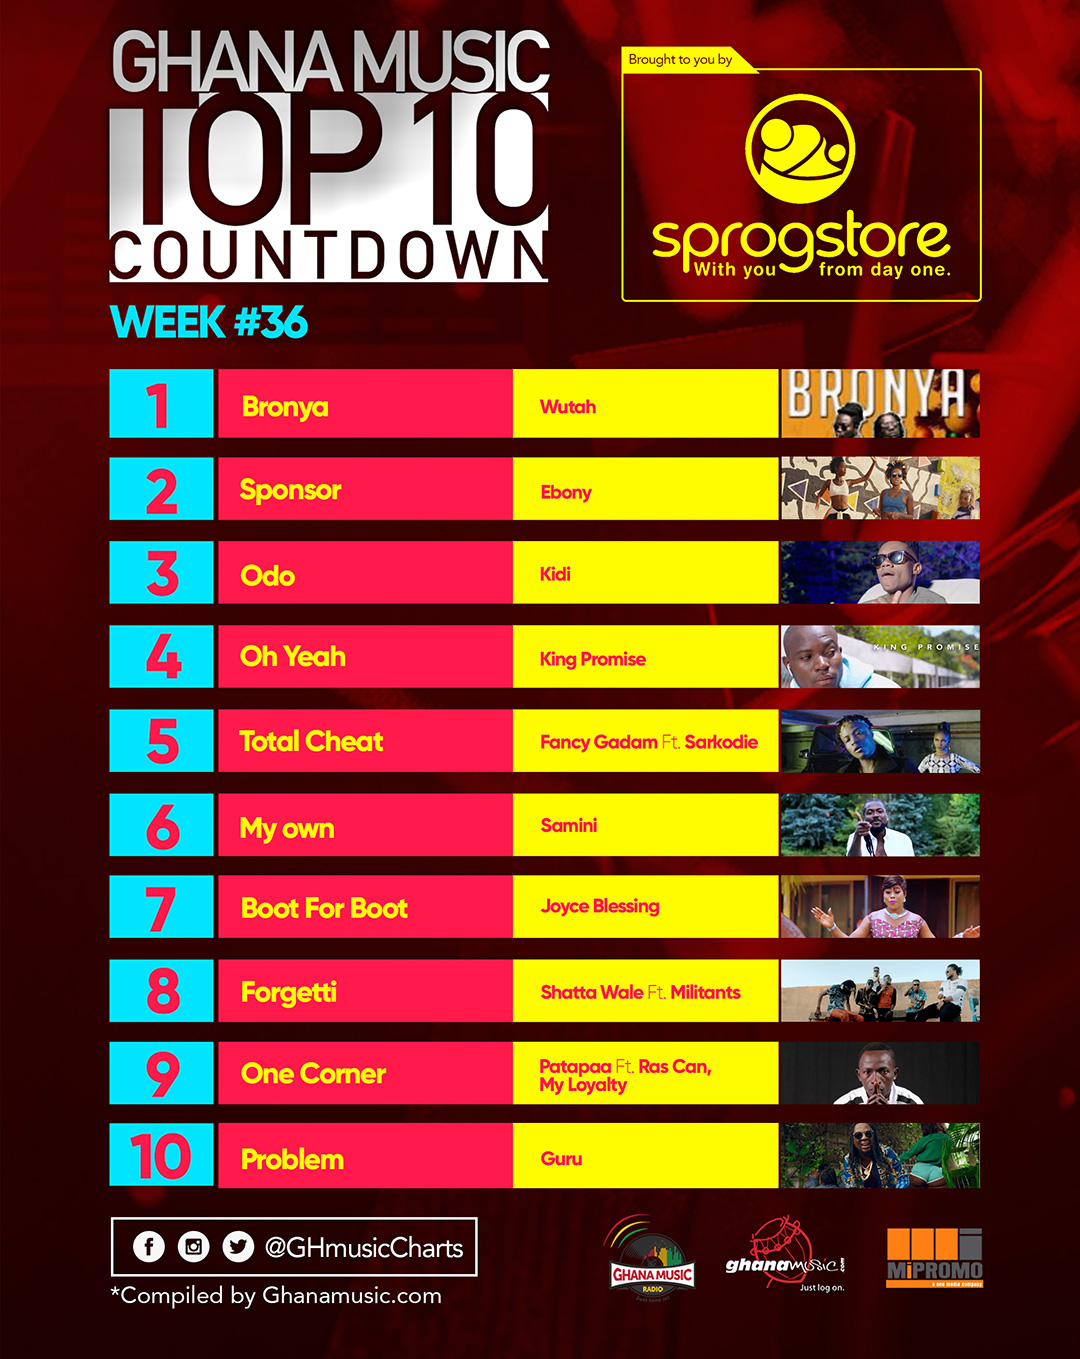 Week #36: Week ending Saturday, September 10th, 2017. Ghana Music Top 10 Countdown.